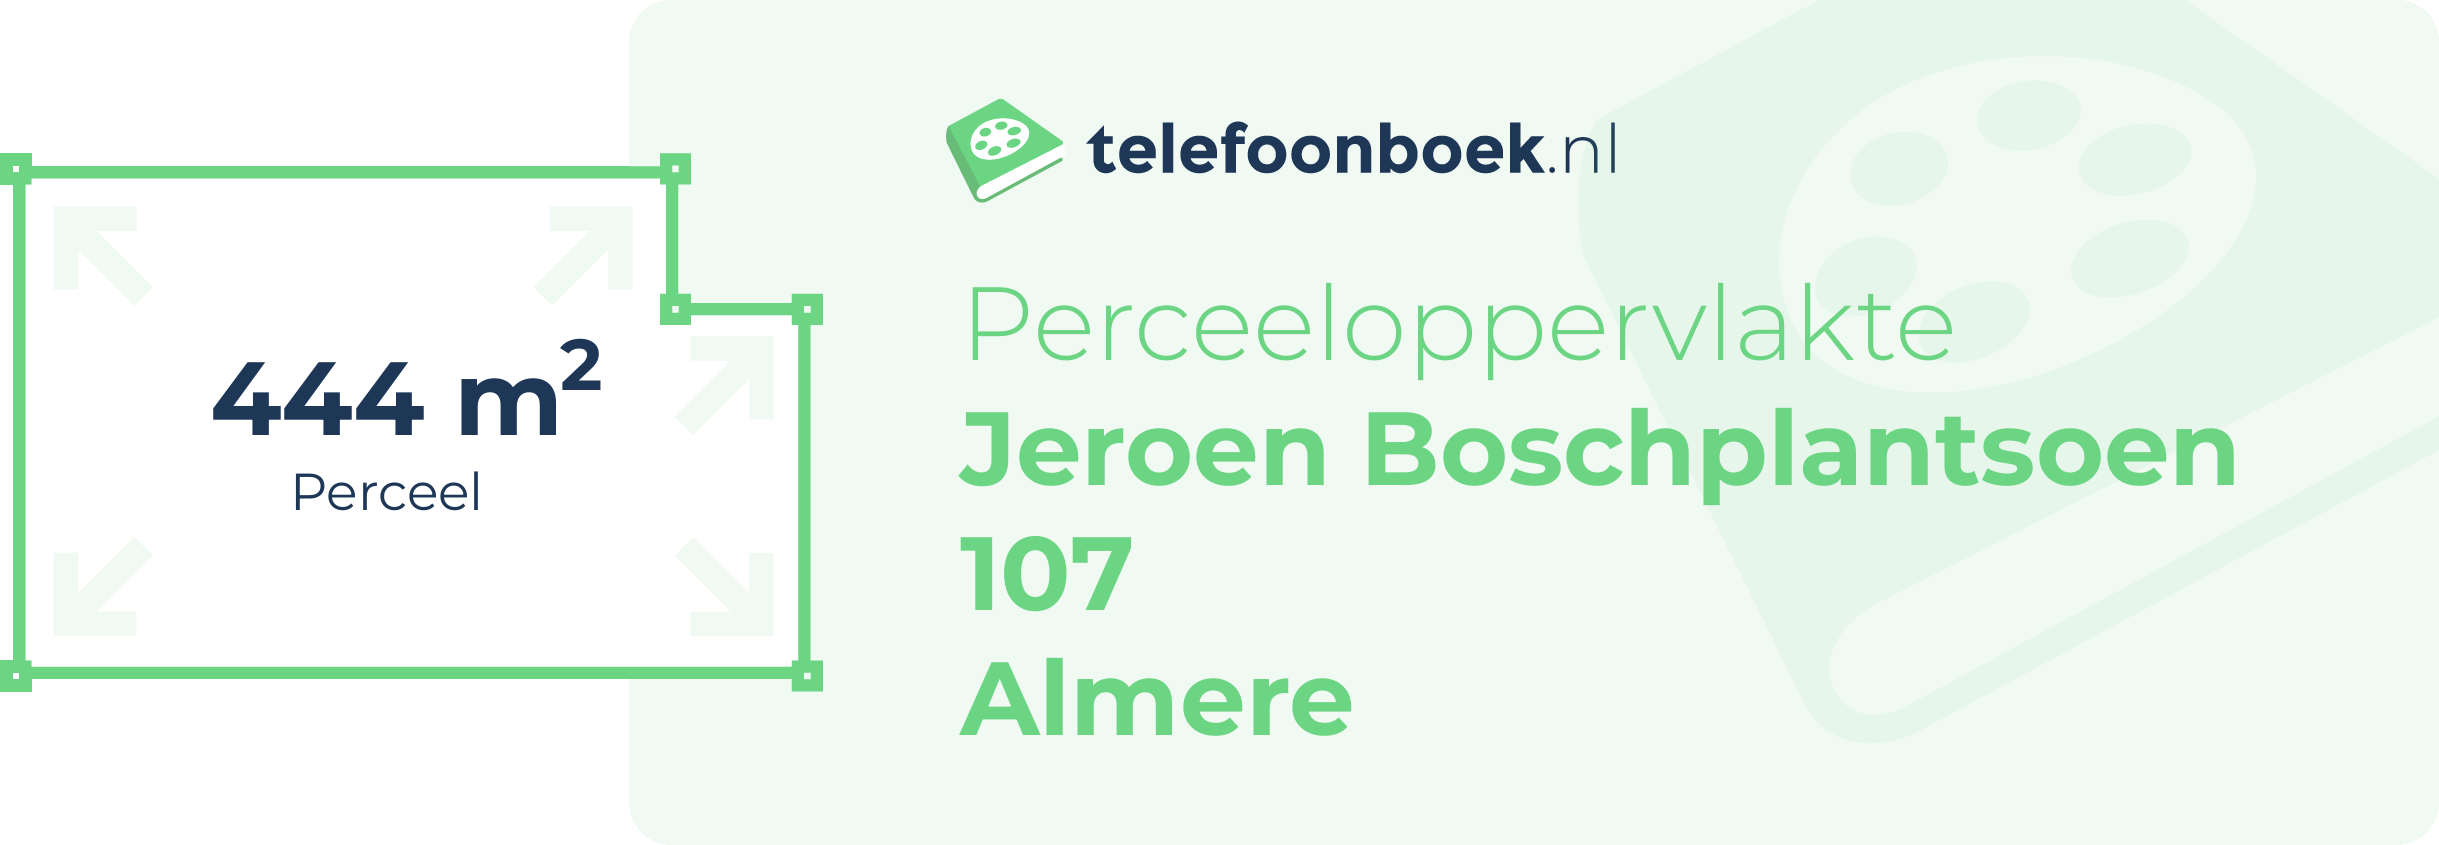 Perceeloppervlakte Jeroen Boschplantsoen 107 Almere